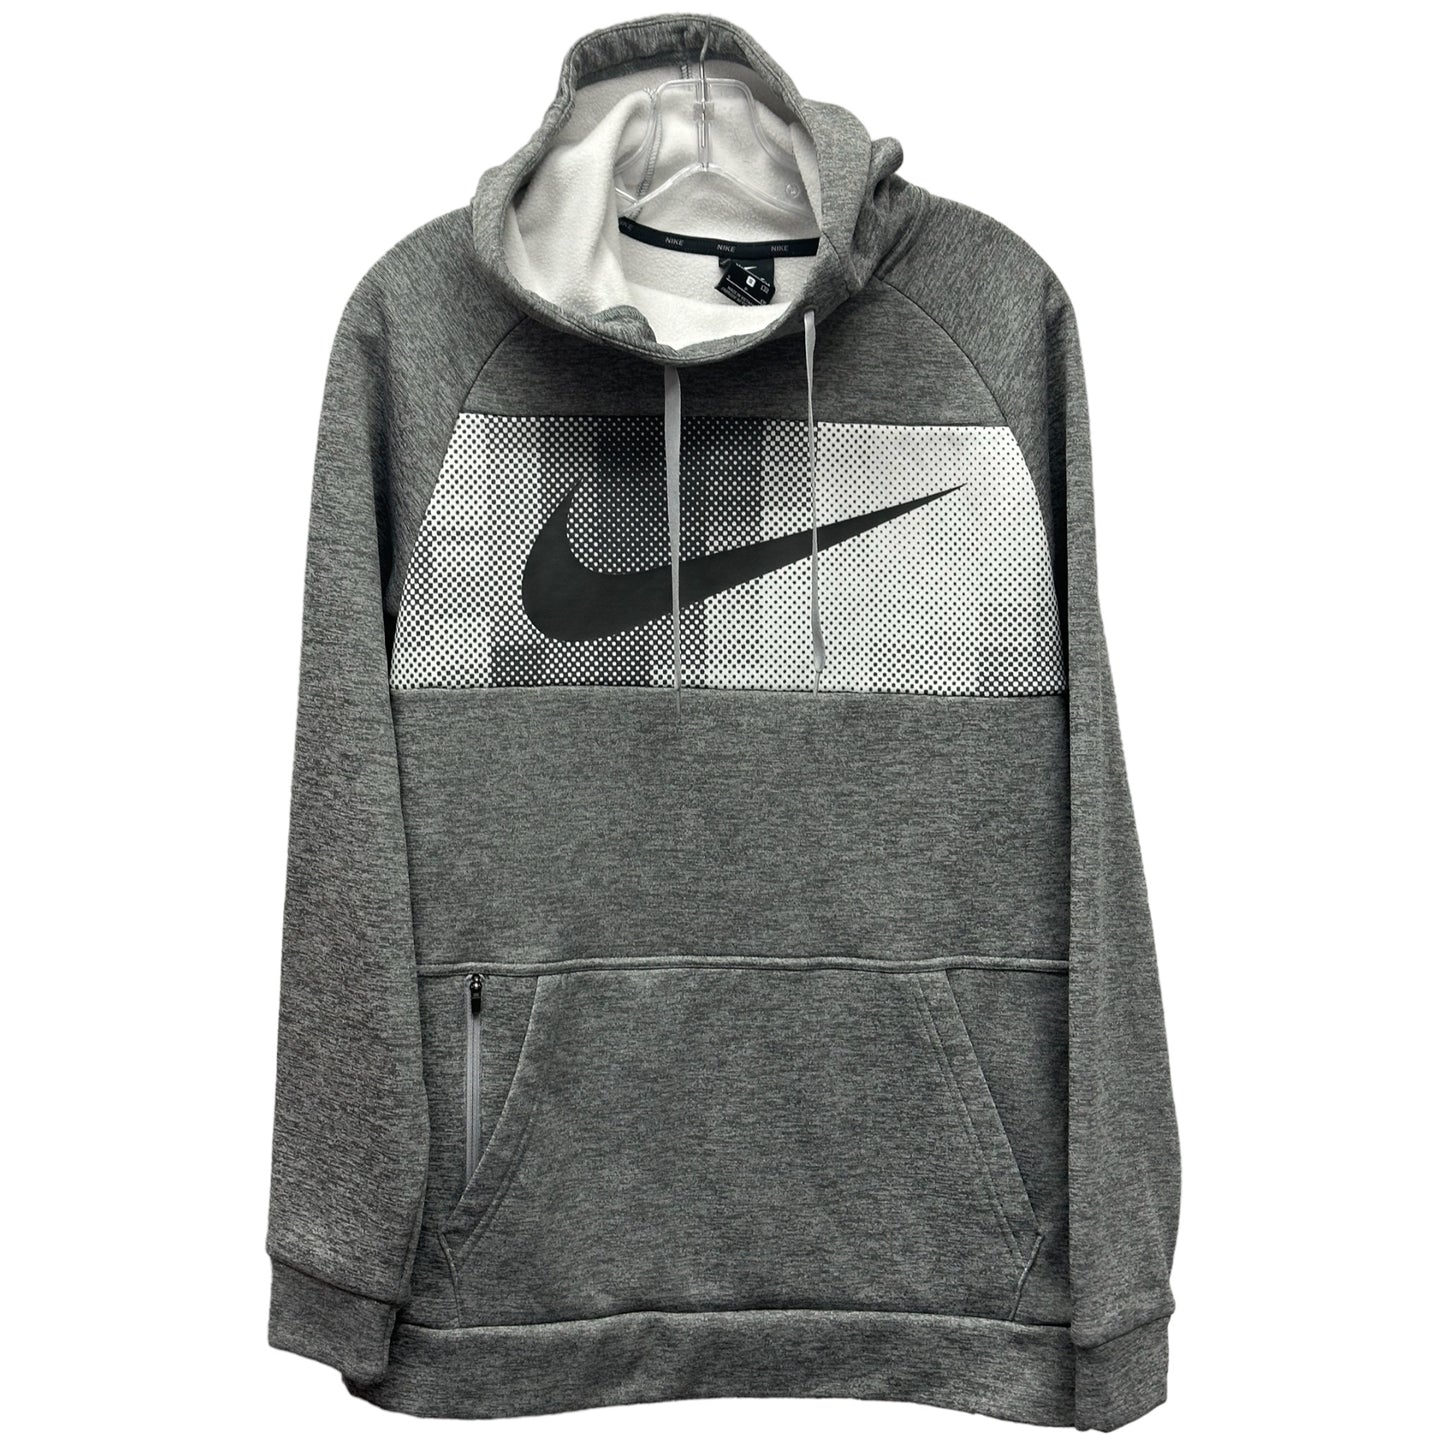 Nike Adult XS Sweatshirt